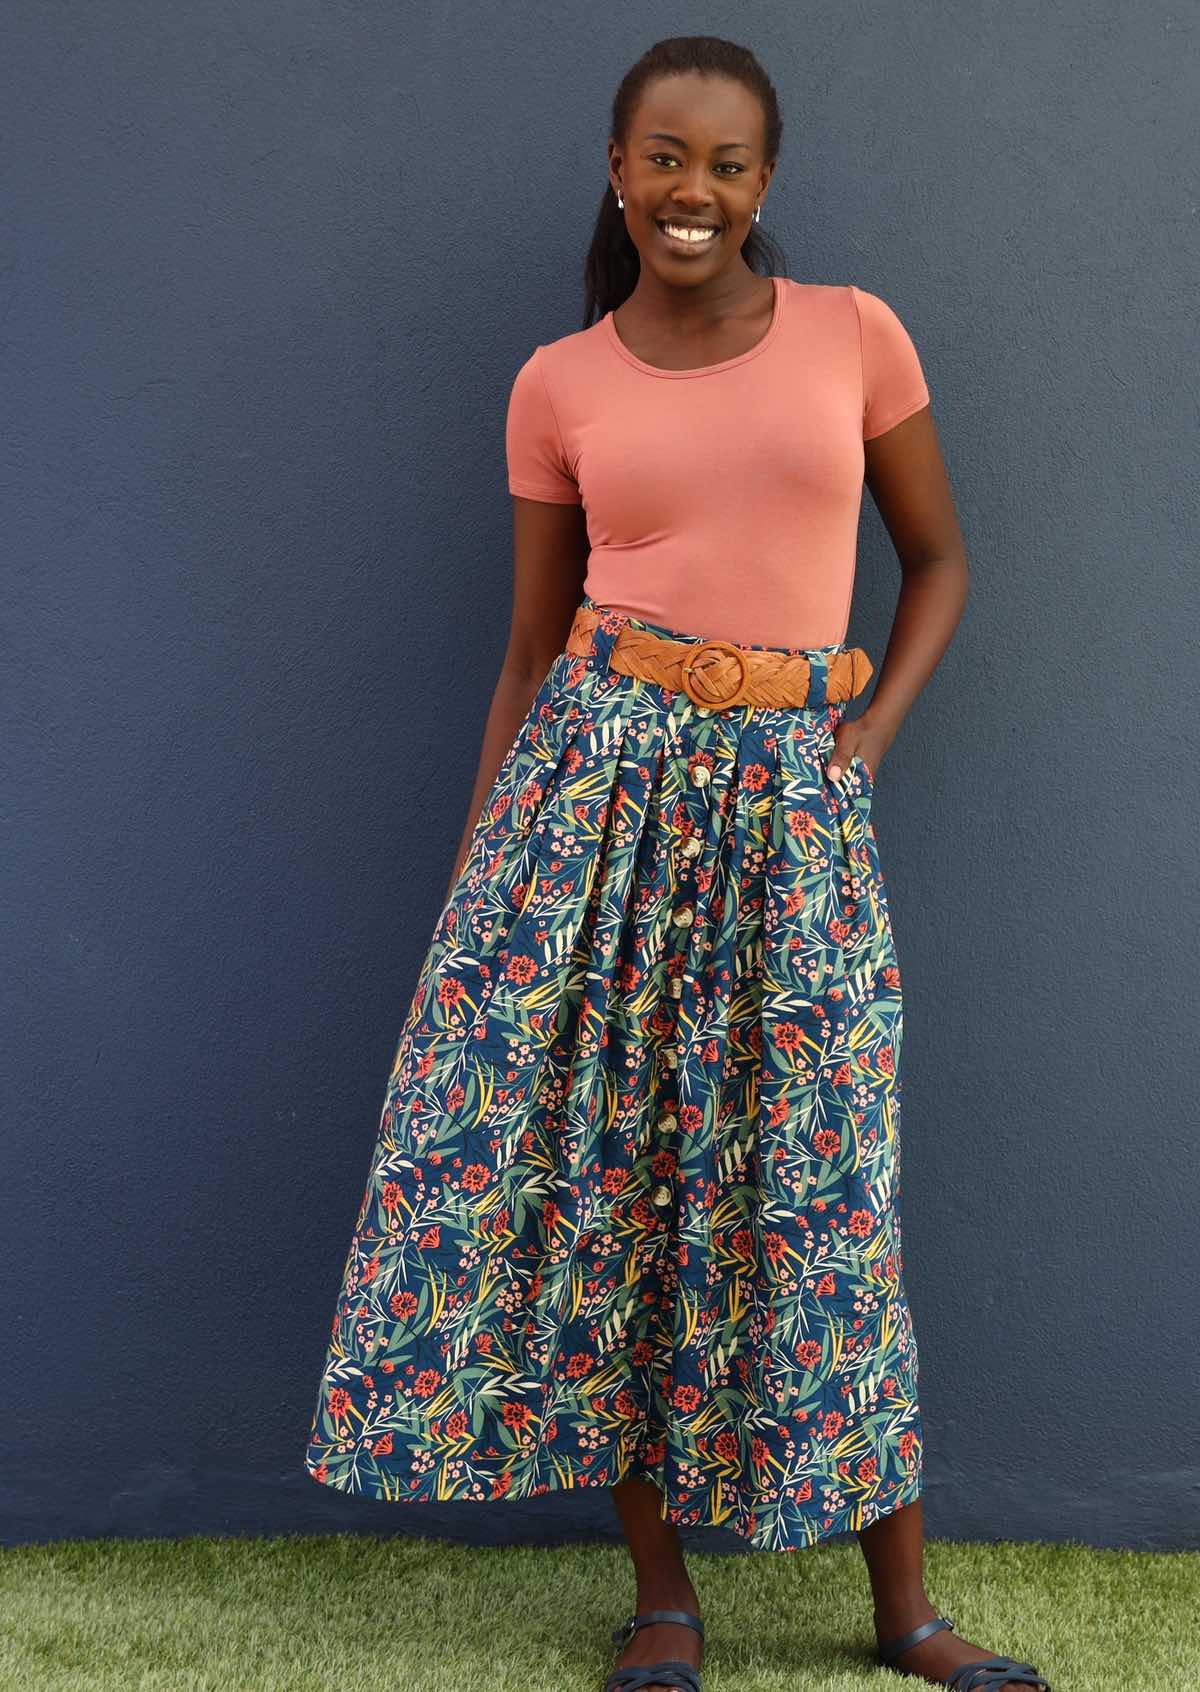 Model smiles in gorgeous blue floral midi length skirt